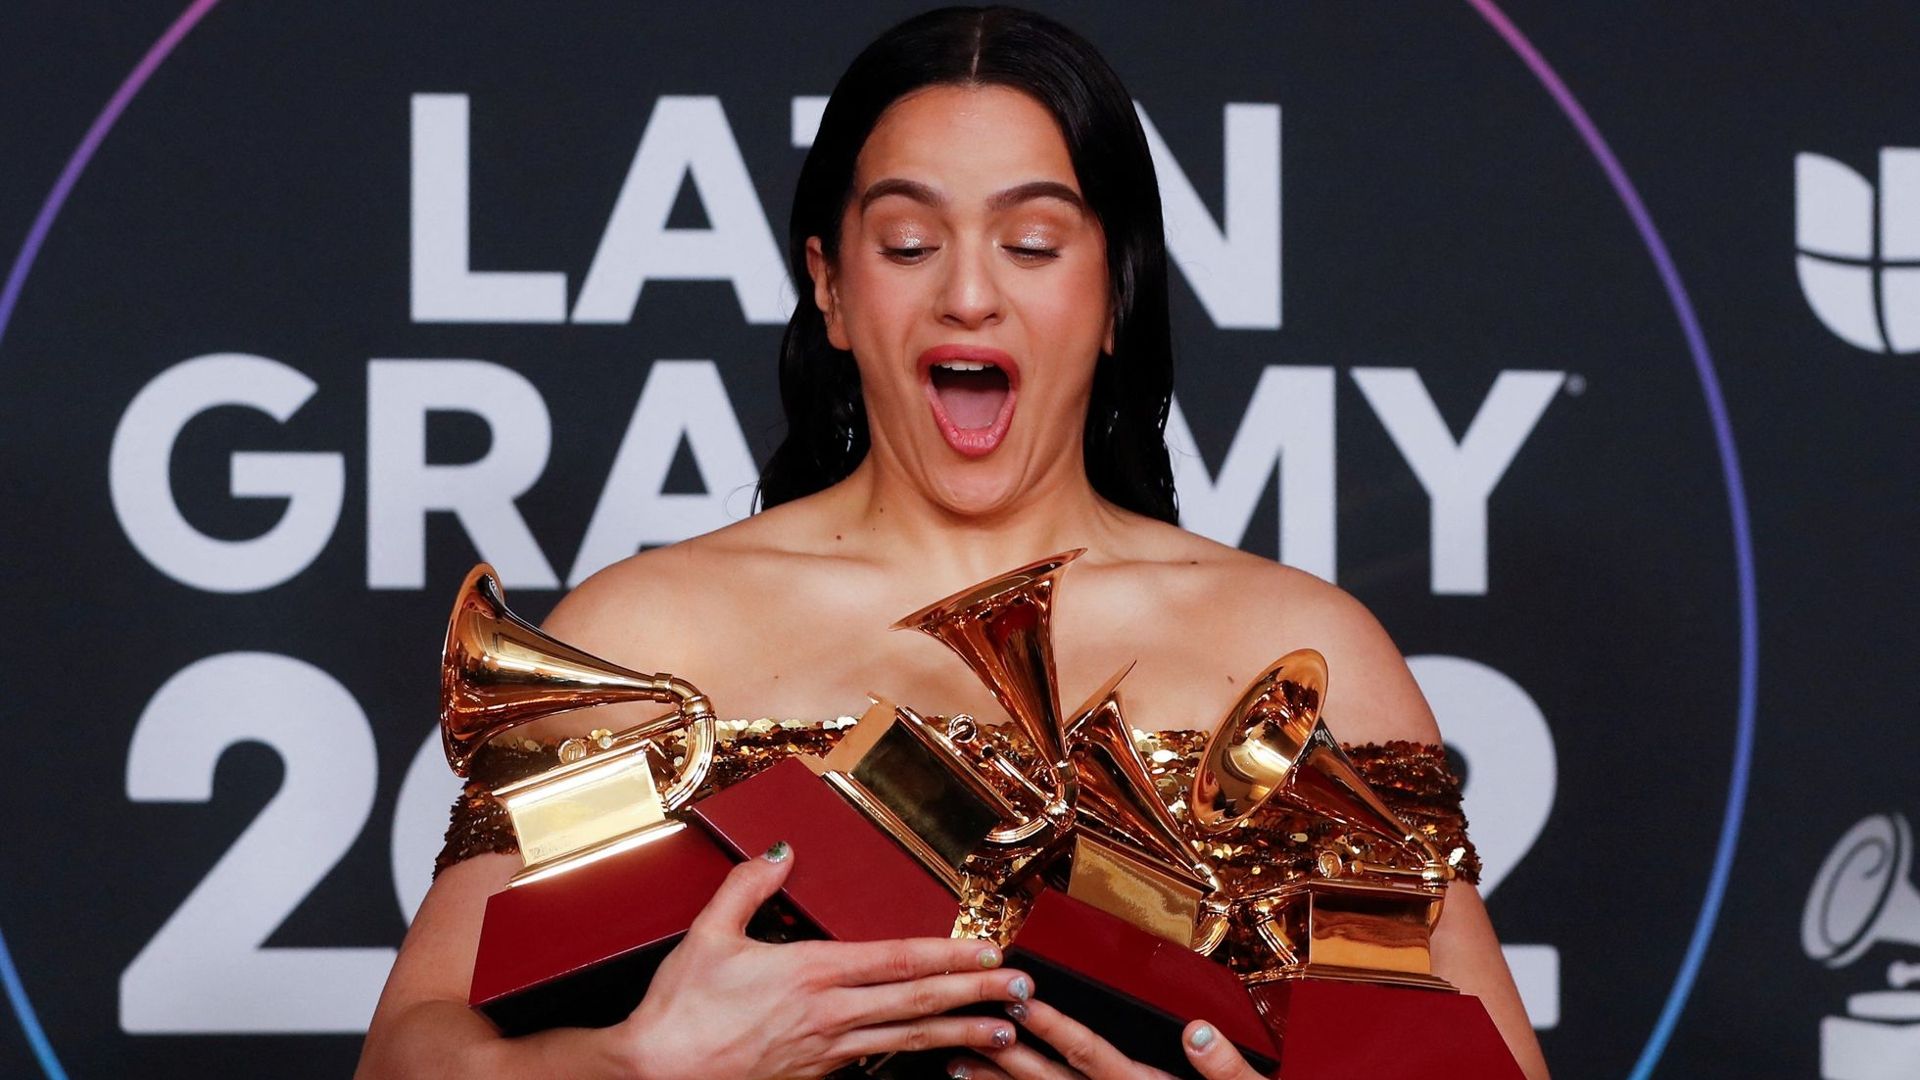 Vetusta Morla: Ni siquiera sabemos si ganar el Latin Grammy cambiaría  algo - Hola News